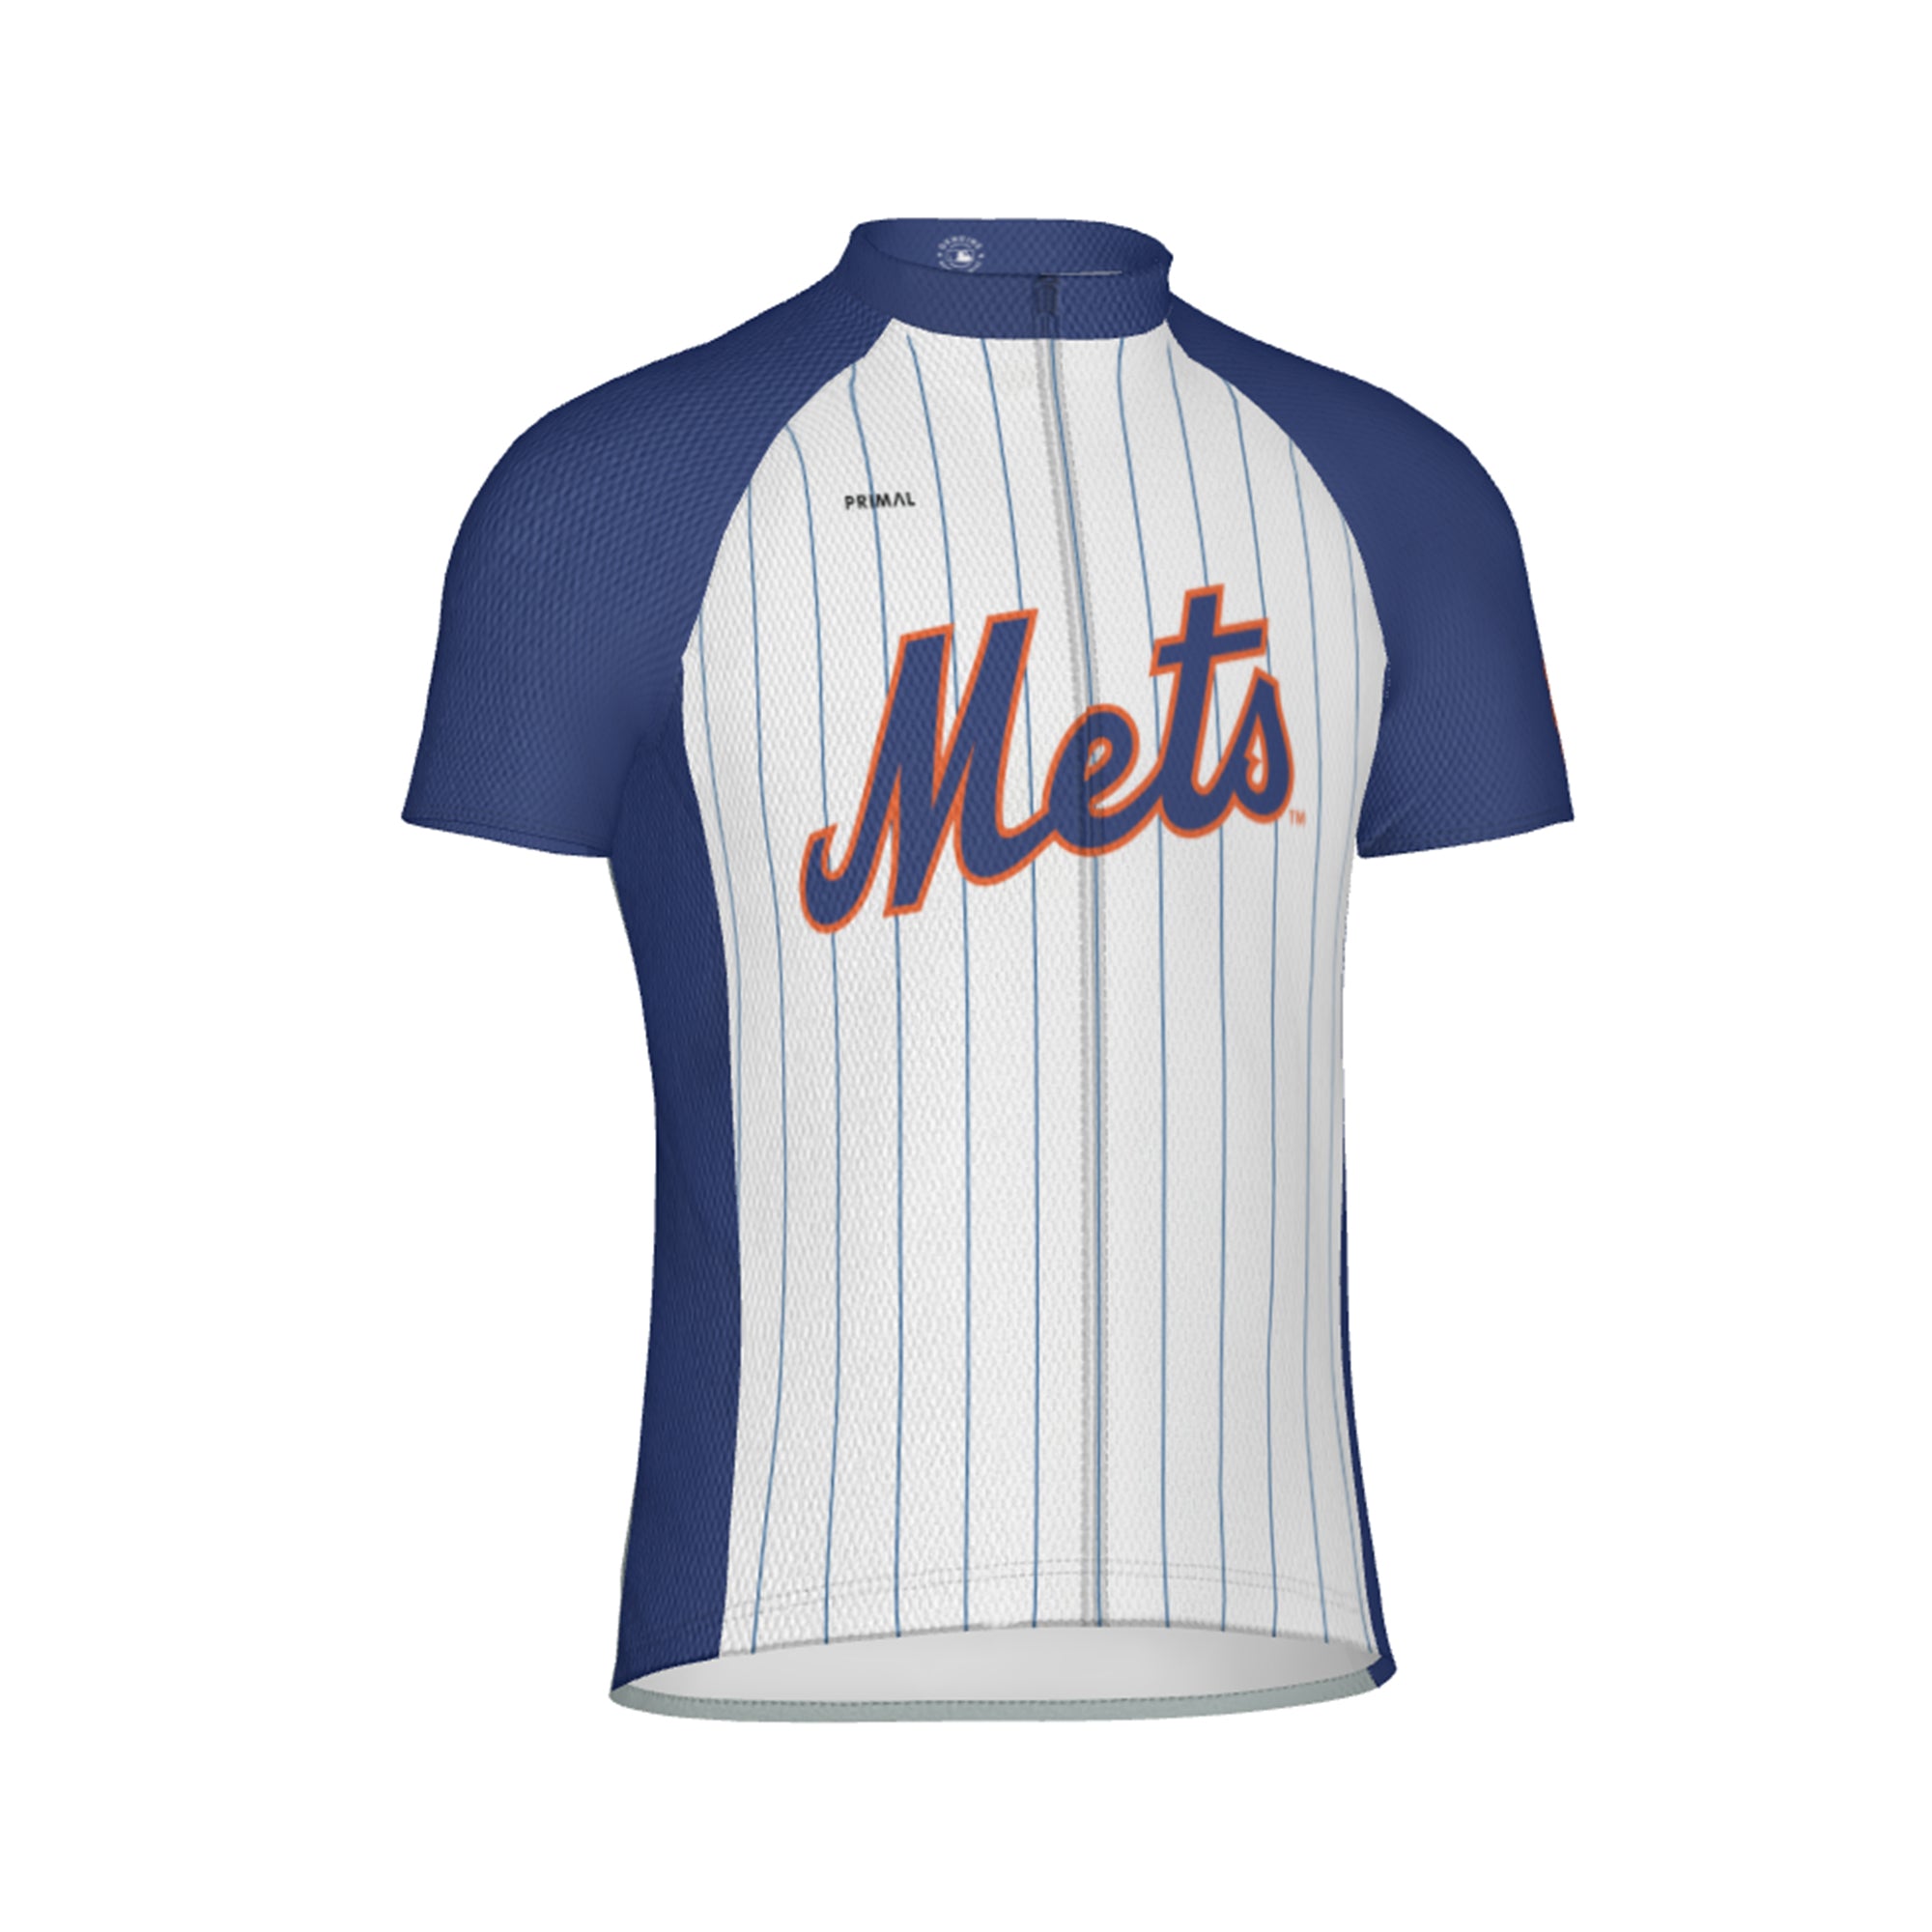 New York Mets Jerseys in New York Mets Team Shop 